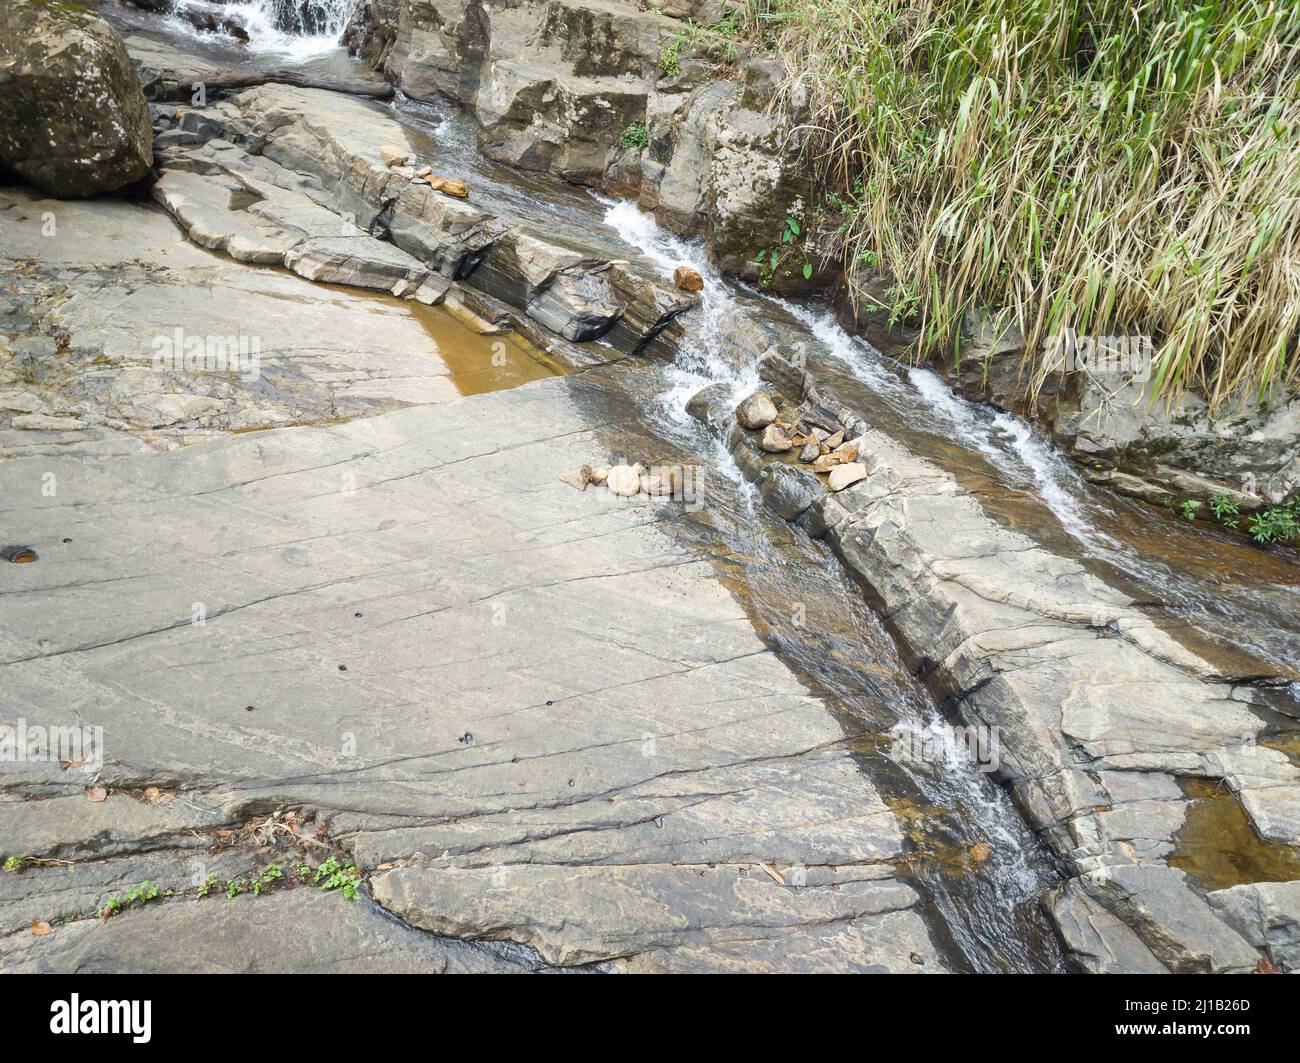 Strom fließt durch Felsen, engen Fluss oder Fluss von Wasser auf einer felsigen Oberfläche Stockfoto